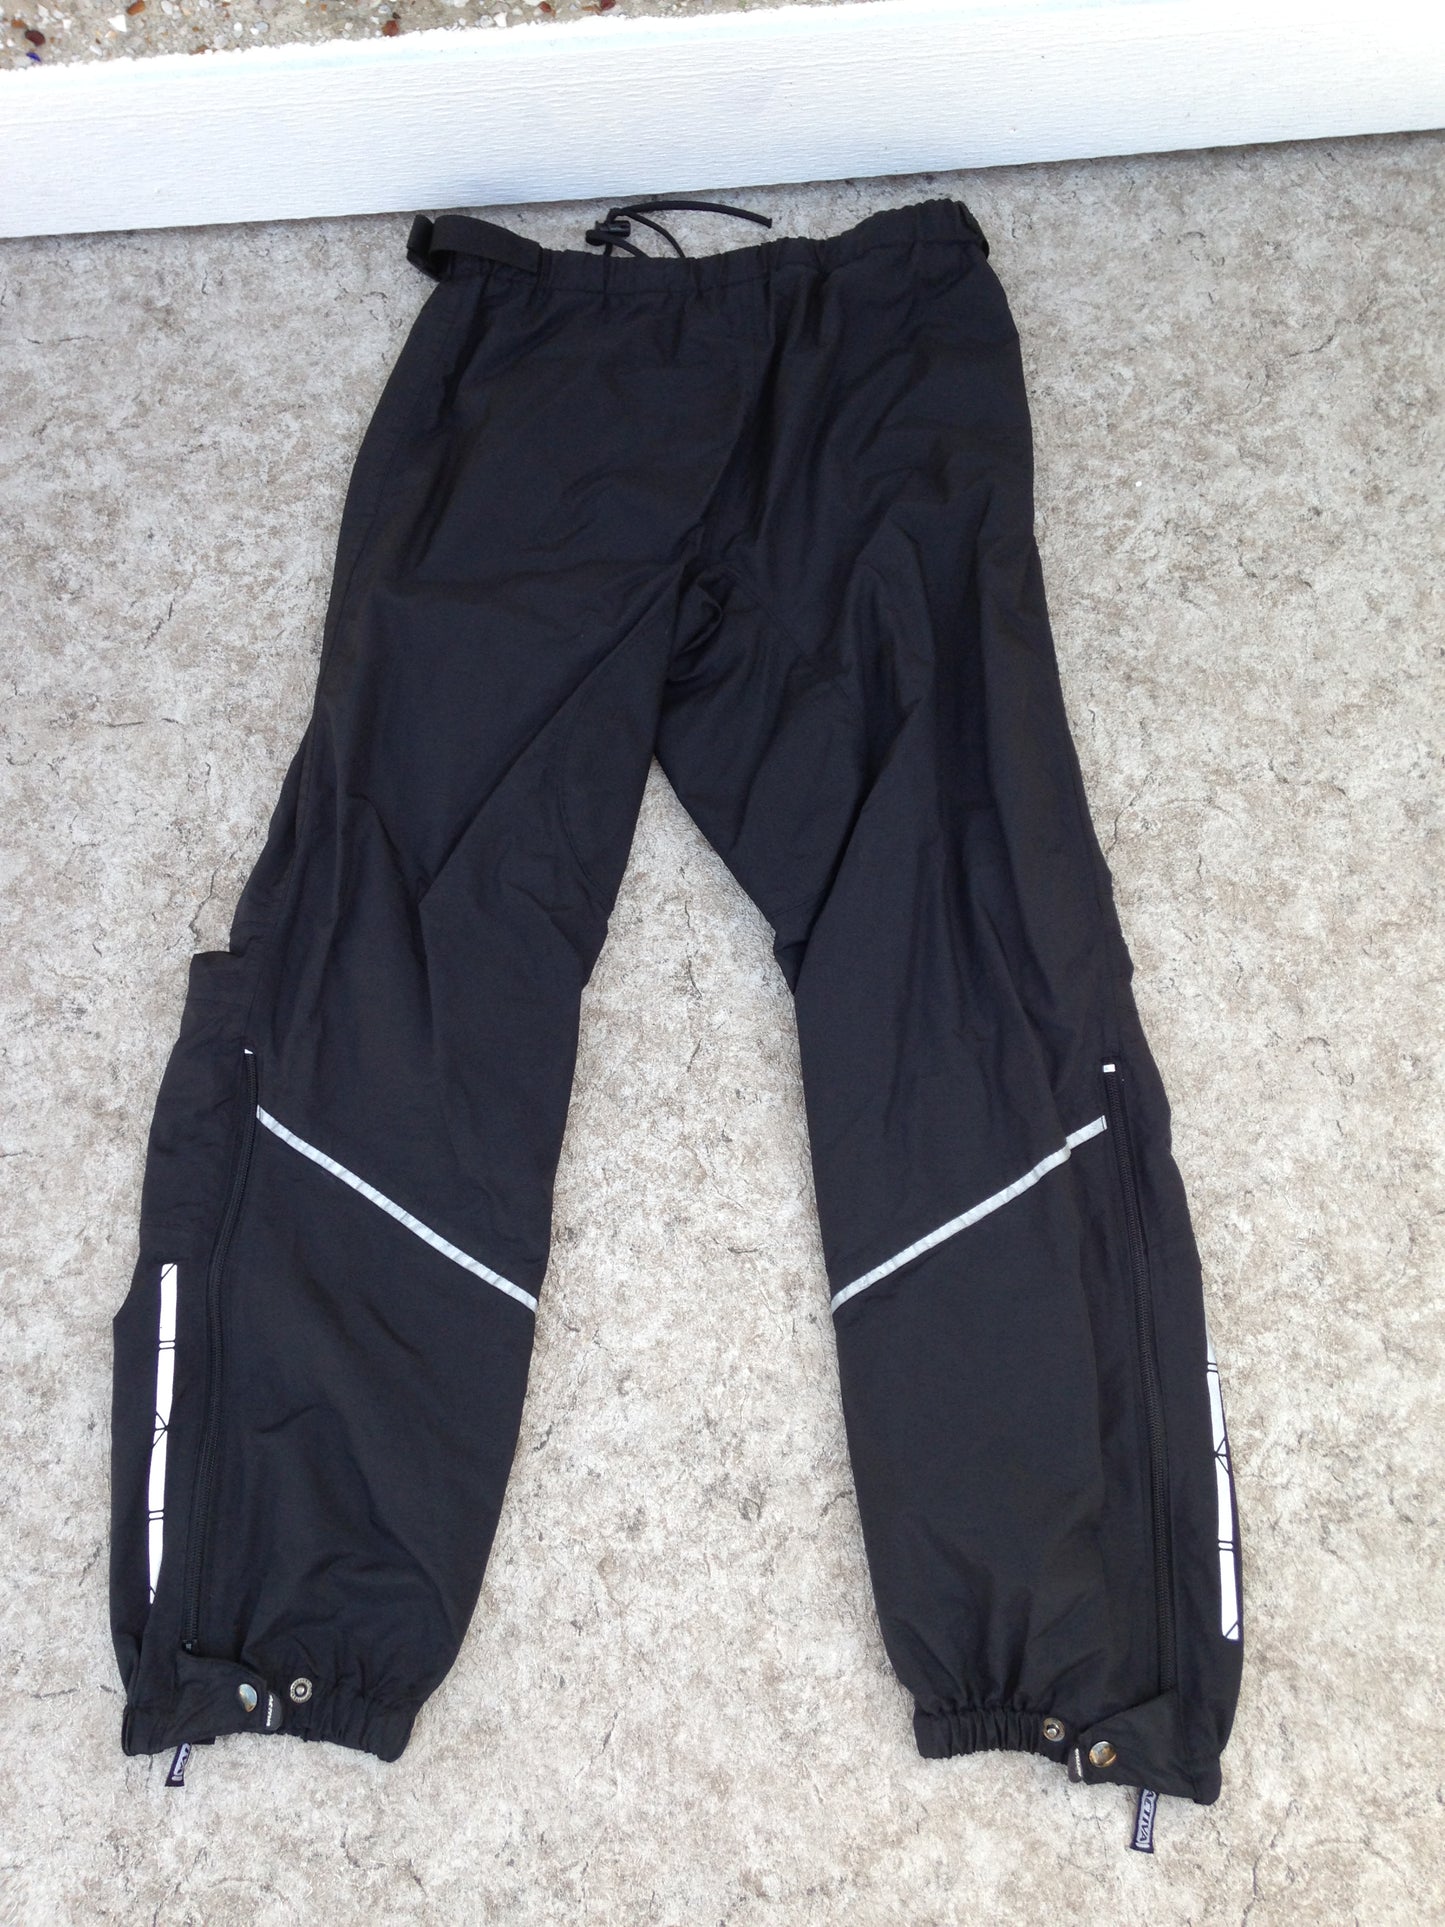 Rain Pants Men's Size Large Activa Bike Run Walk Waterproof Reflectors Zippers Up Side Black Excellent